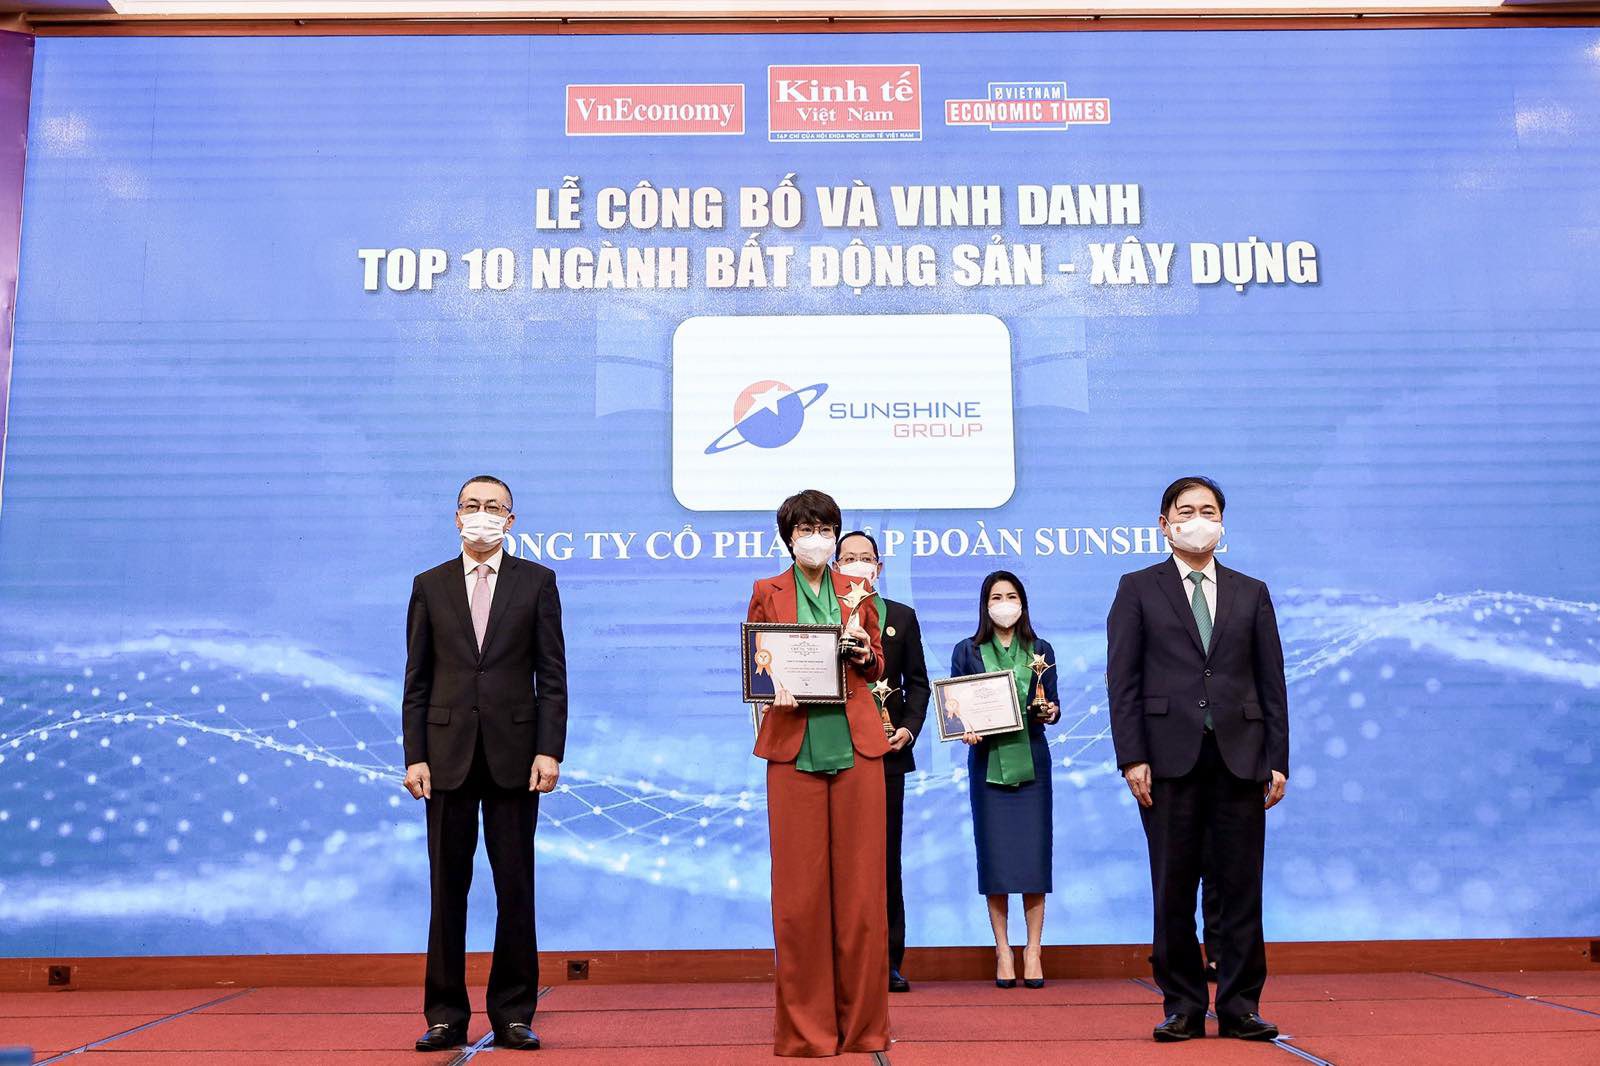 Sunshine Group được vinh danh trong TOP 10 Thương hiệu mạnh Việt Nam ngành Bất động sản - Xây dựng